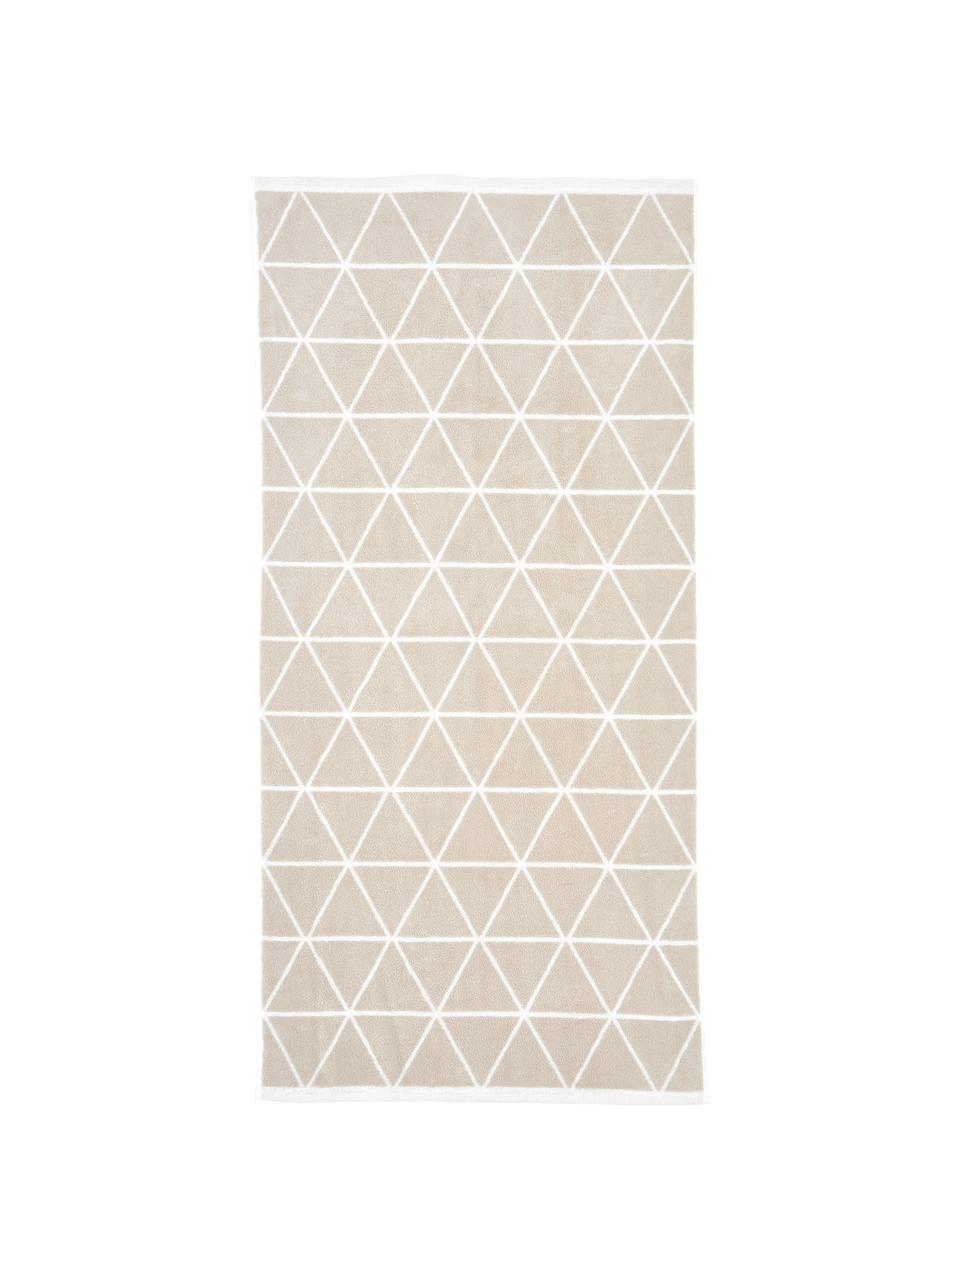 Wende-Handtuch-Set Elina mit grafischem Muster, 3-tlg., Sandfarben, Cremeweiß, Set mit verschiedenen Größen